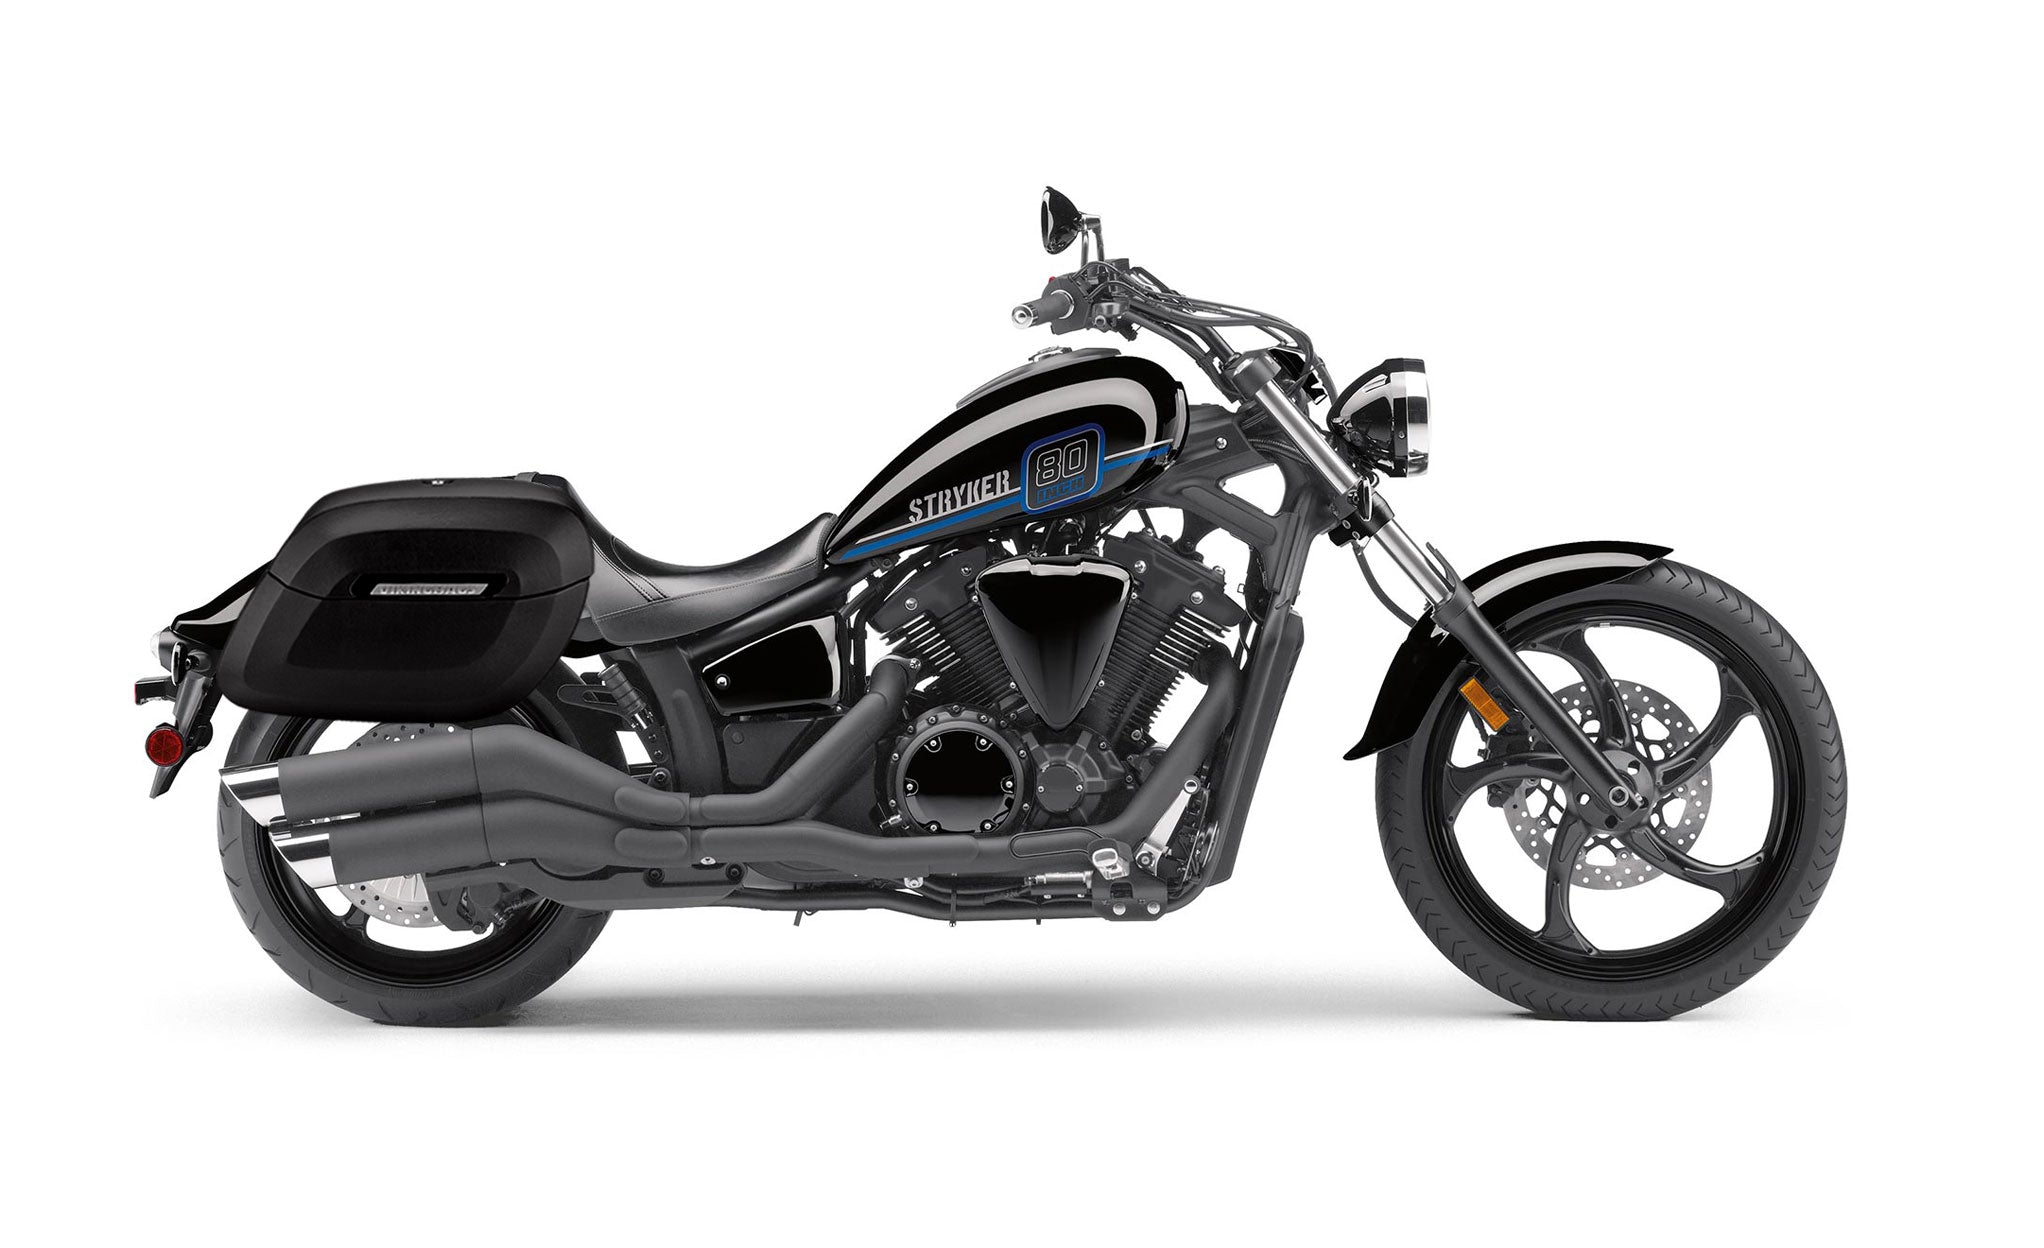 Viking Lamellar Raven Extra Large Yamaha Stryker Leather Covered Motorcycle Hard Saddlebags on Bike Photo @expand